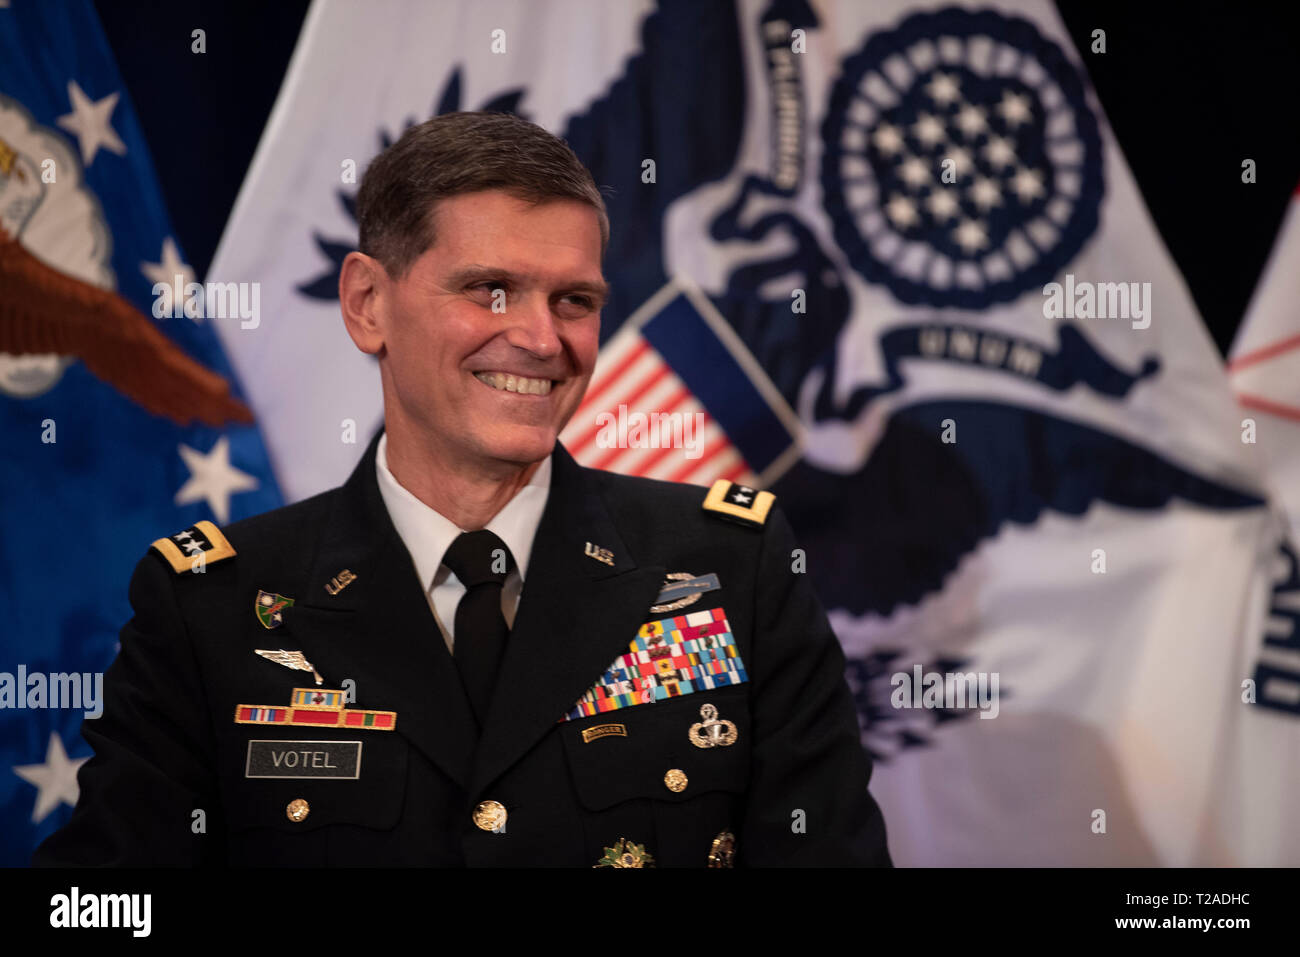 Der scheidende Kommandeur des US Central Command, General Joseph L. Votel, lächelt während seiner Pensionierung Zeremonie an der Macdill Air Force Base, 29. März 2019 in Tampa, Florida. Votel im Ruhestand nach 39 Jahren Militärdienst. Stockfoto